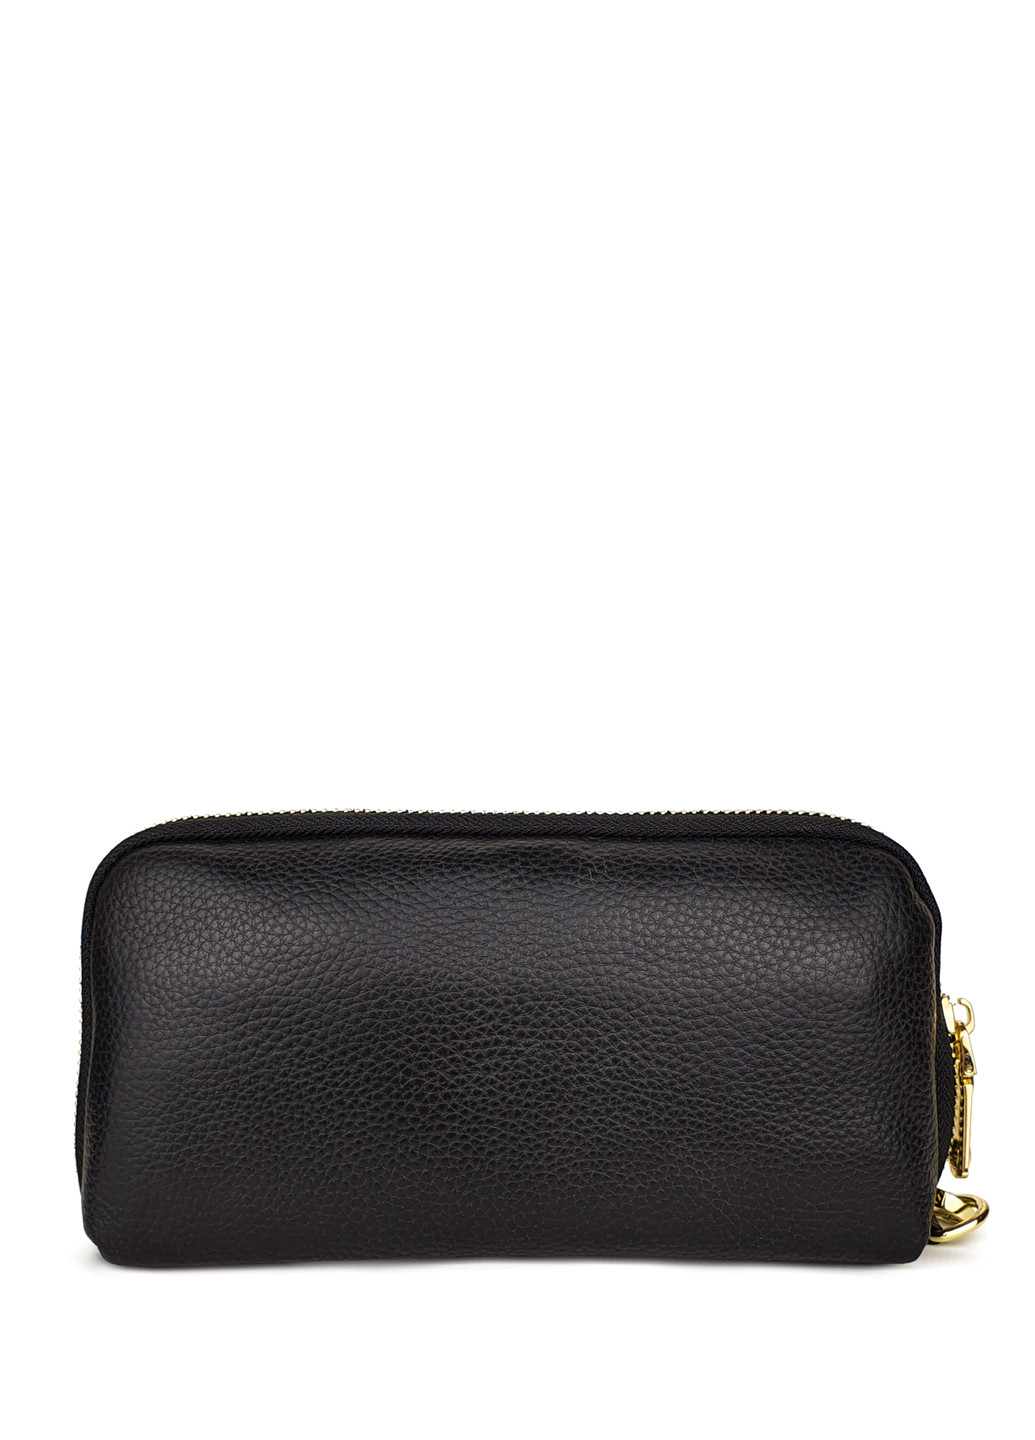 Жіночий гаманець портмоне великий чорний шкіряний 21*11*5 Fashion (252033297)